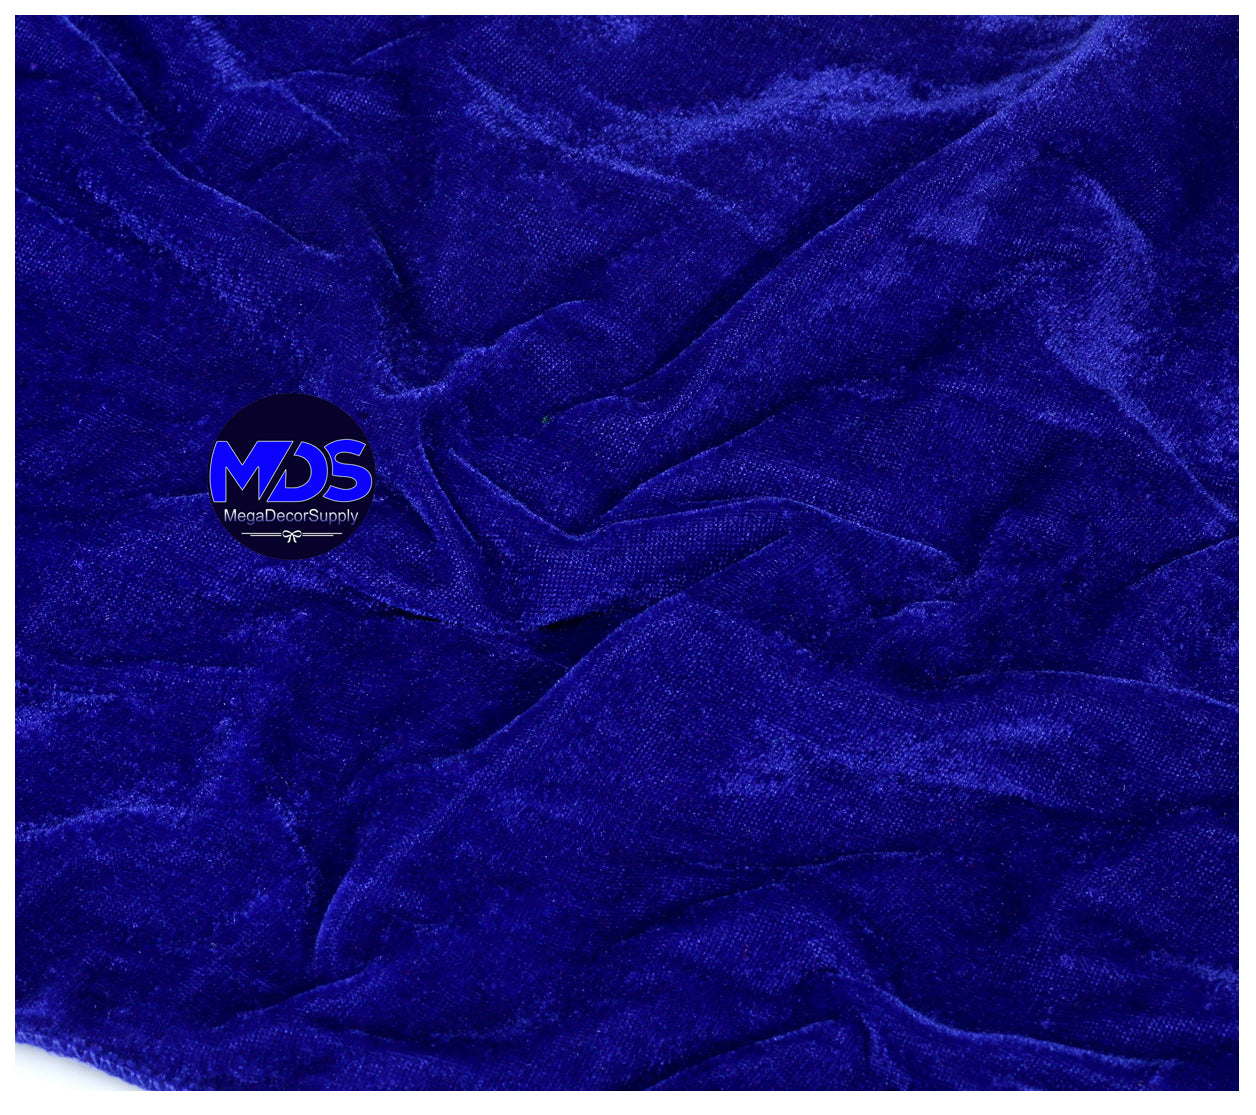 Royal Blue,61edcd9c-68e6-43d2-ab62-23ddf5e6e7bc